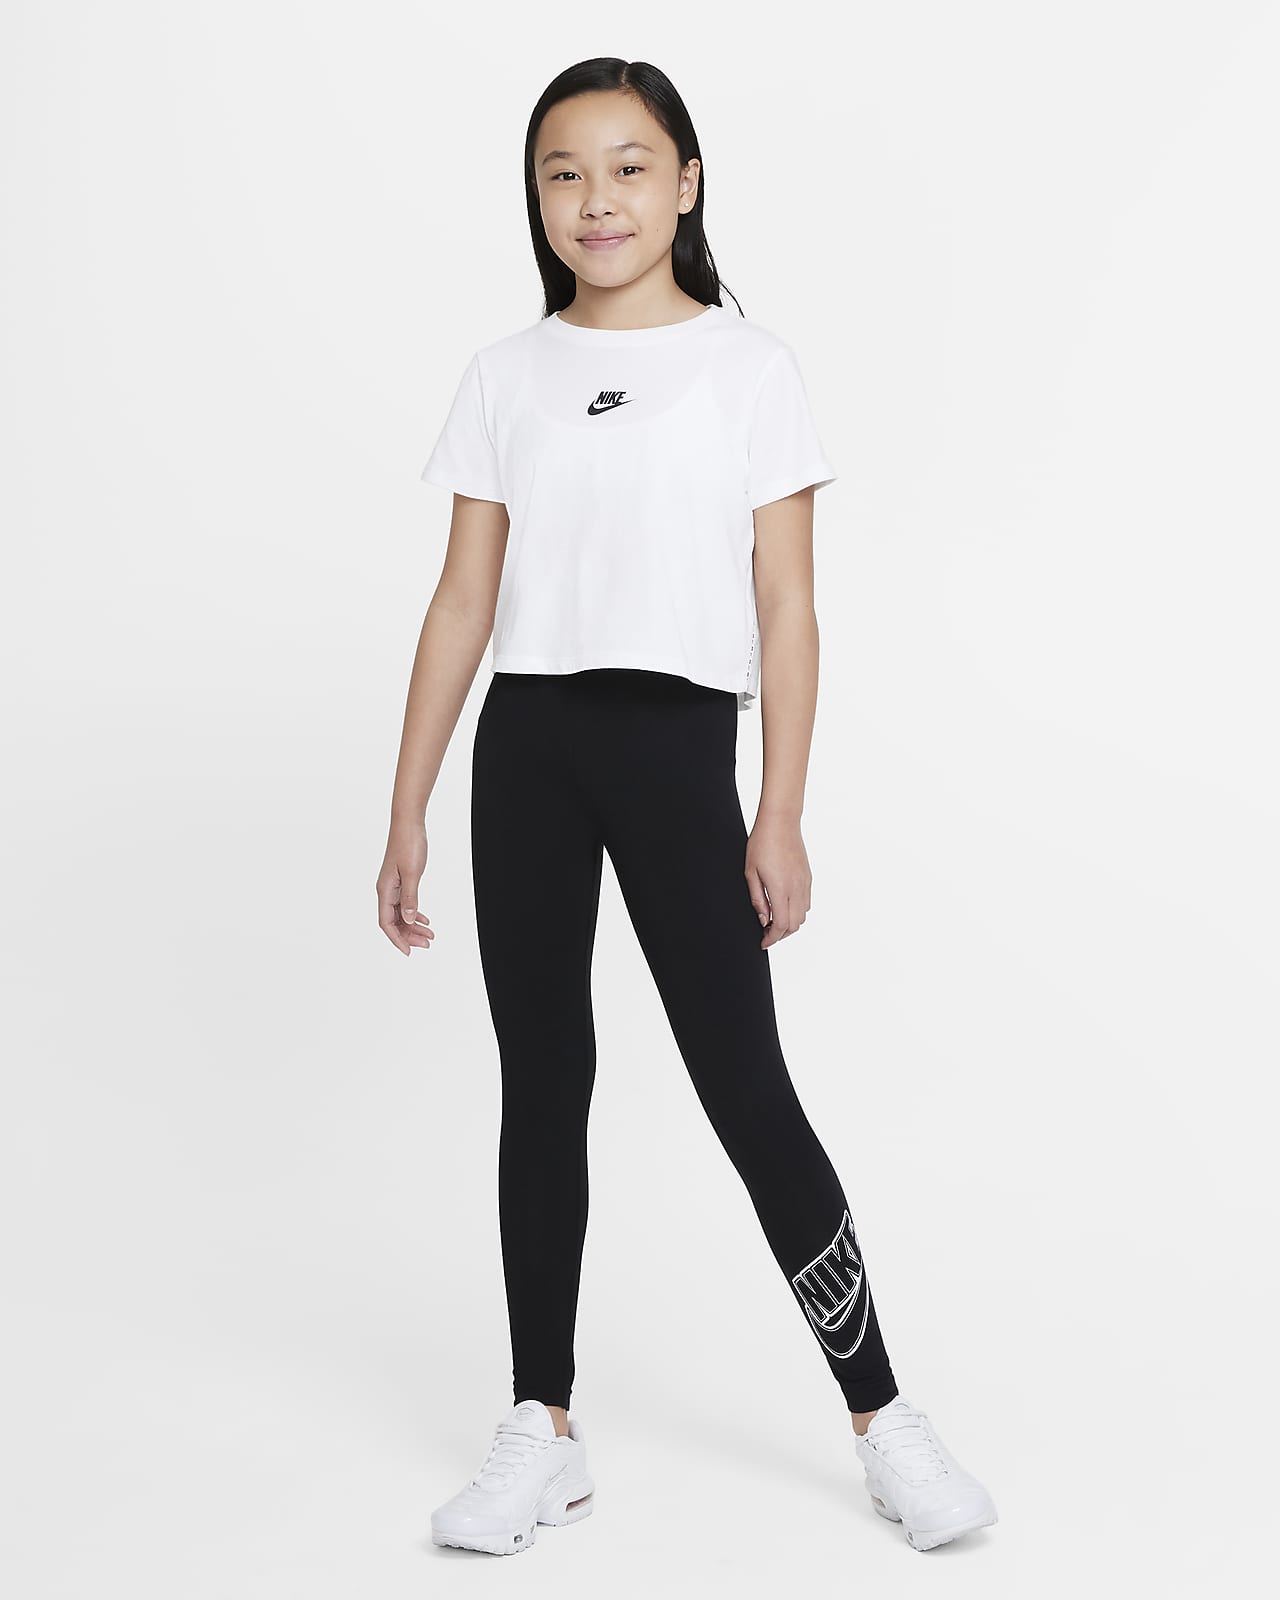 Graphic Kids\' Sportswear Nike Favorites (Girls\') Leggings. Big